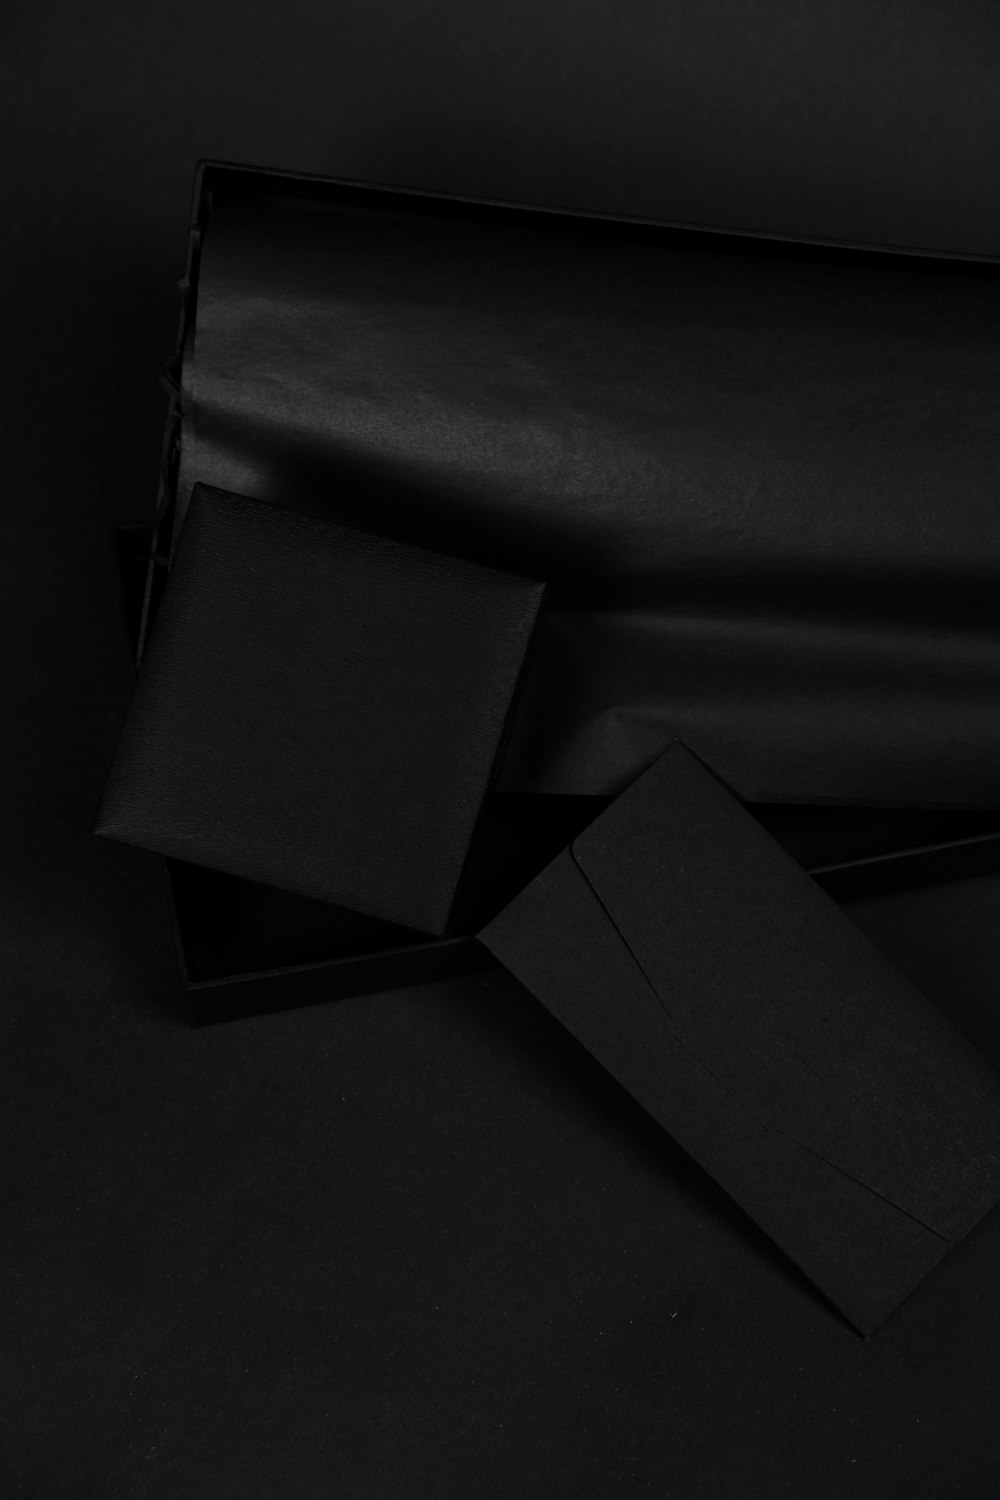 caixa preta no tecido preto